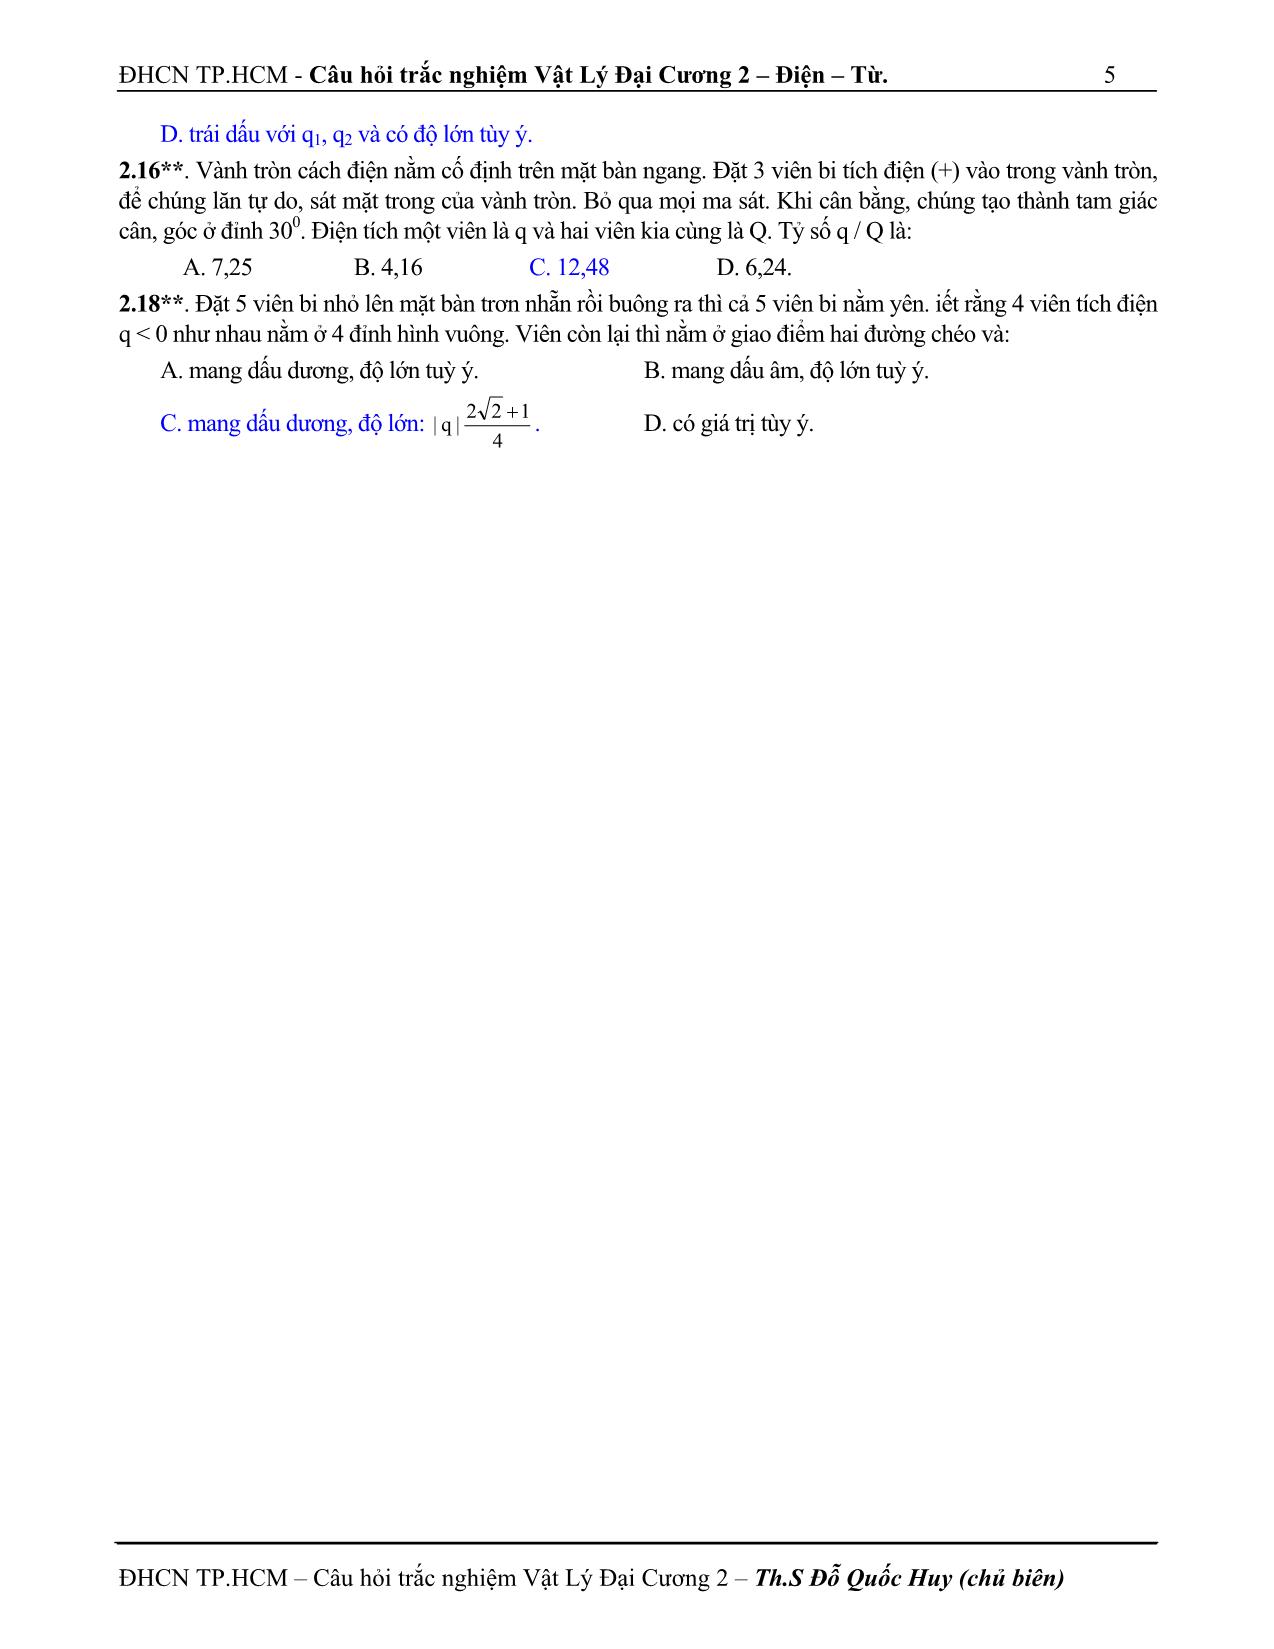 Câu hỏi trắc nghiệm vật lý đại cương 2 trang 5